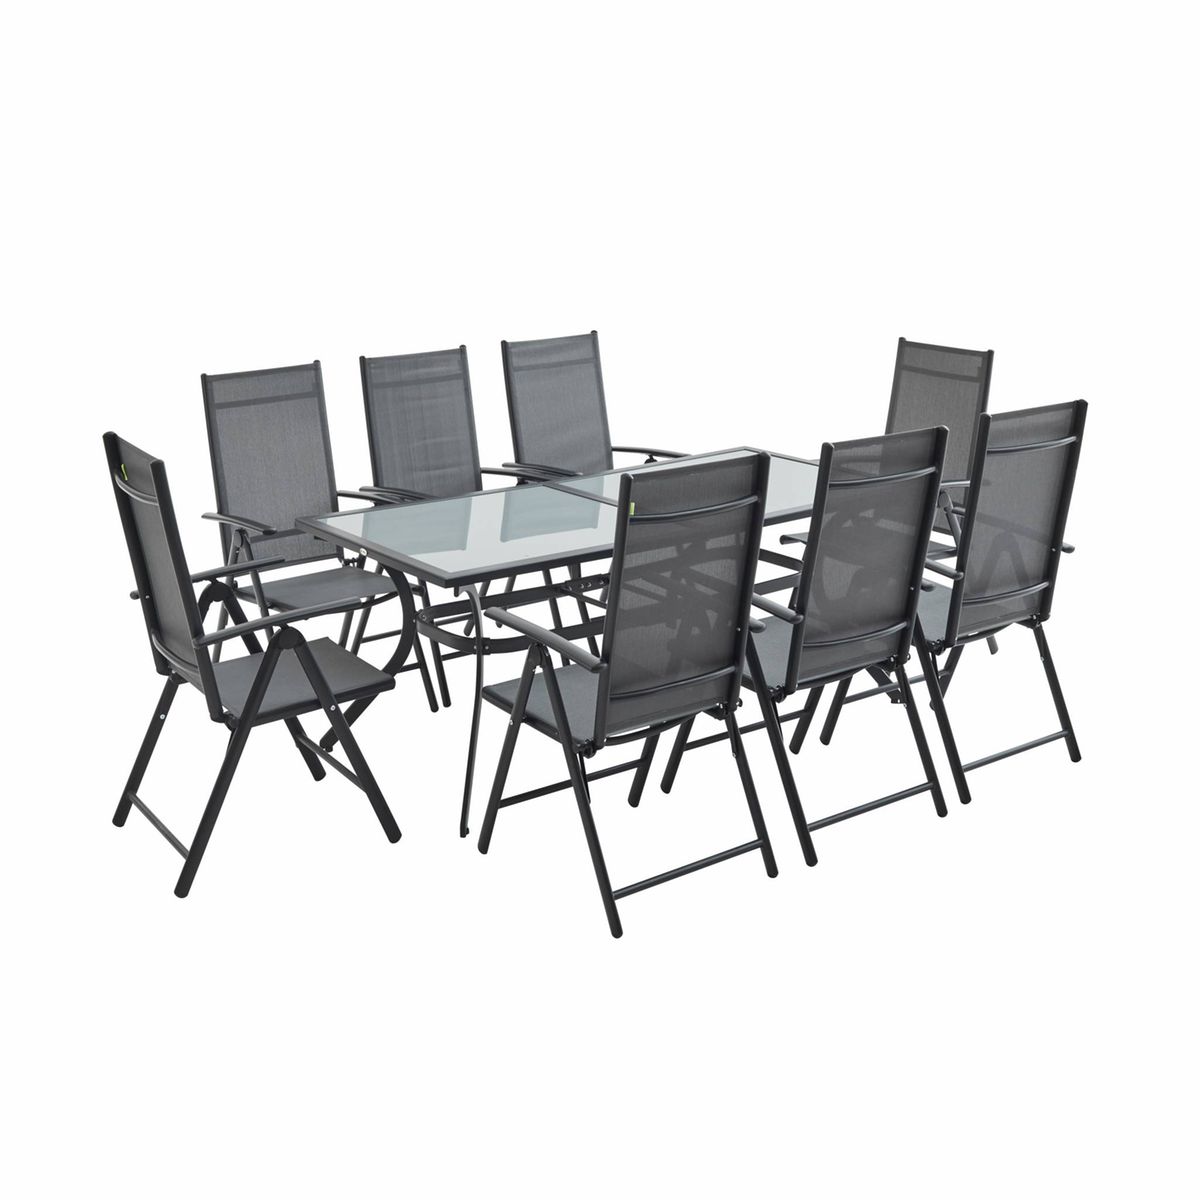 Table de jardin 8 fauteuils aluminium  naevia Alice S Garden  La Redoute